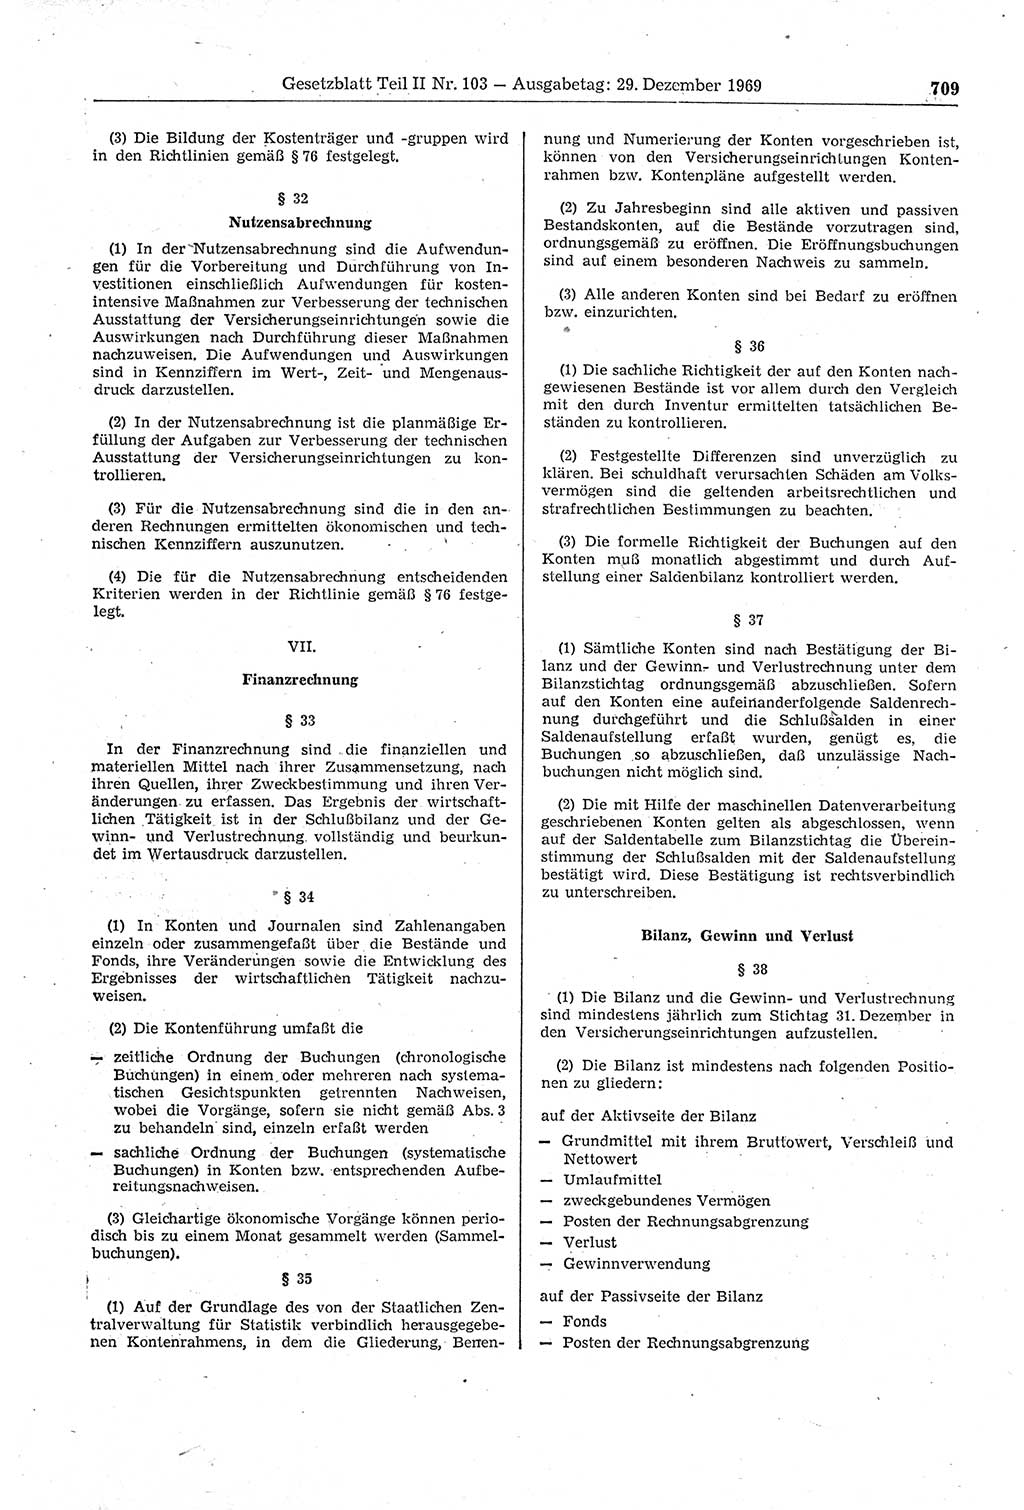 Gesetzblatt (GBl.) der Deutschen Demokratischen Republik (DDR) Teil ⅠⅠ 1969, Seite 709 (GBl. DDR ⅠⅠ 1969, S. 709)